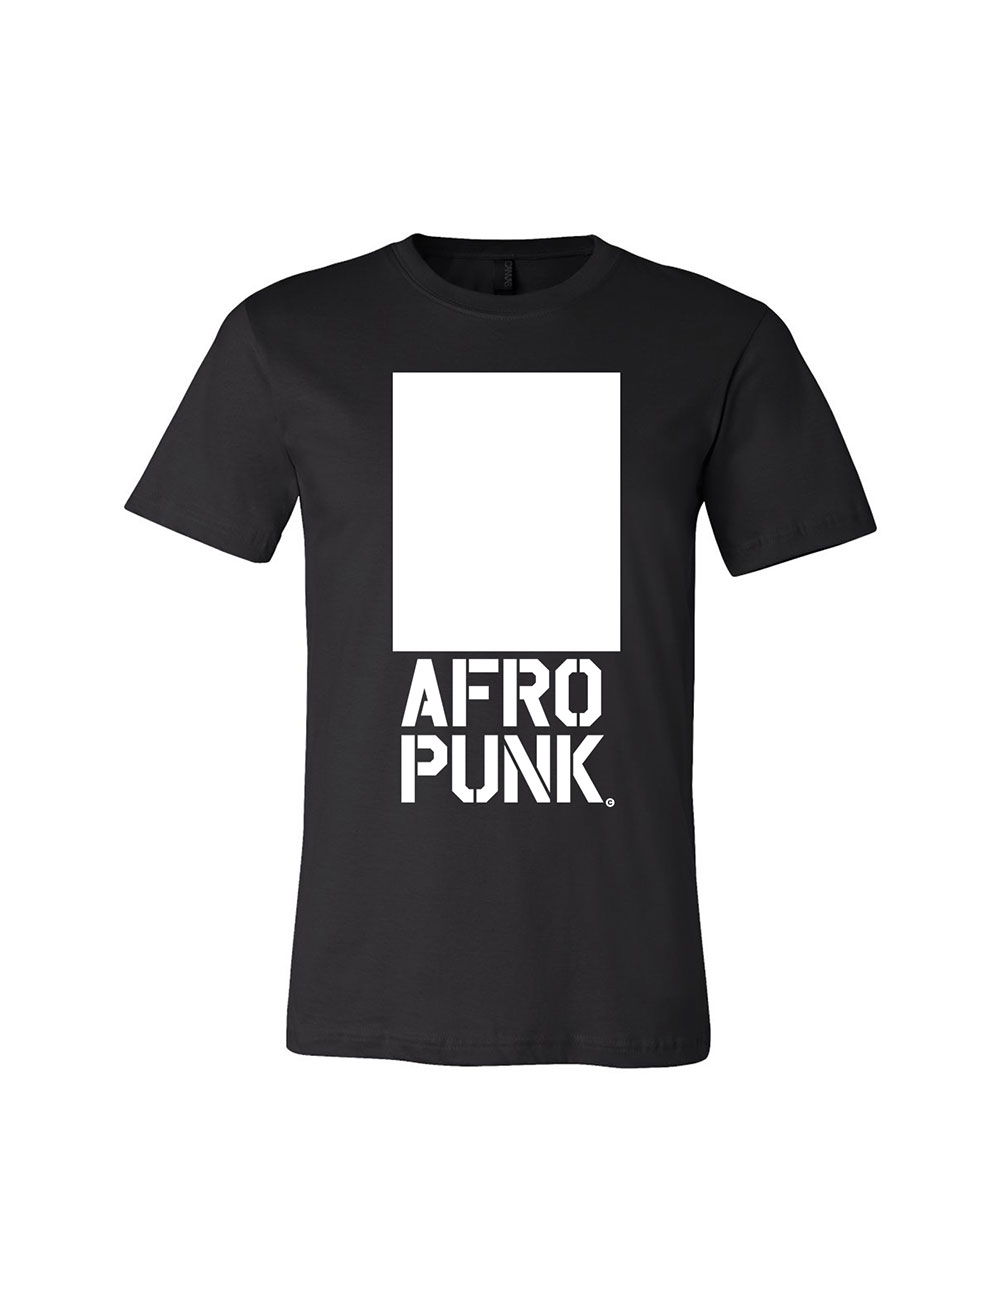 Afropunk - Official Merch Shop - T-Shirts - Box Tee